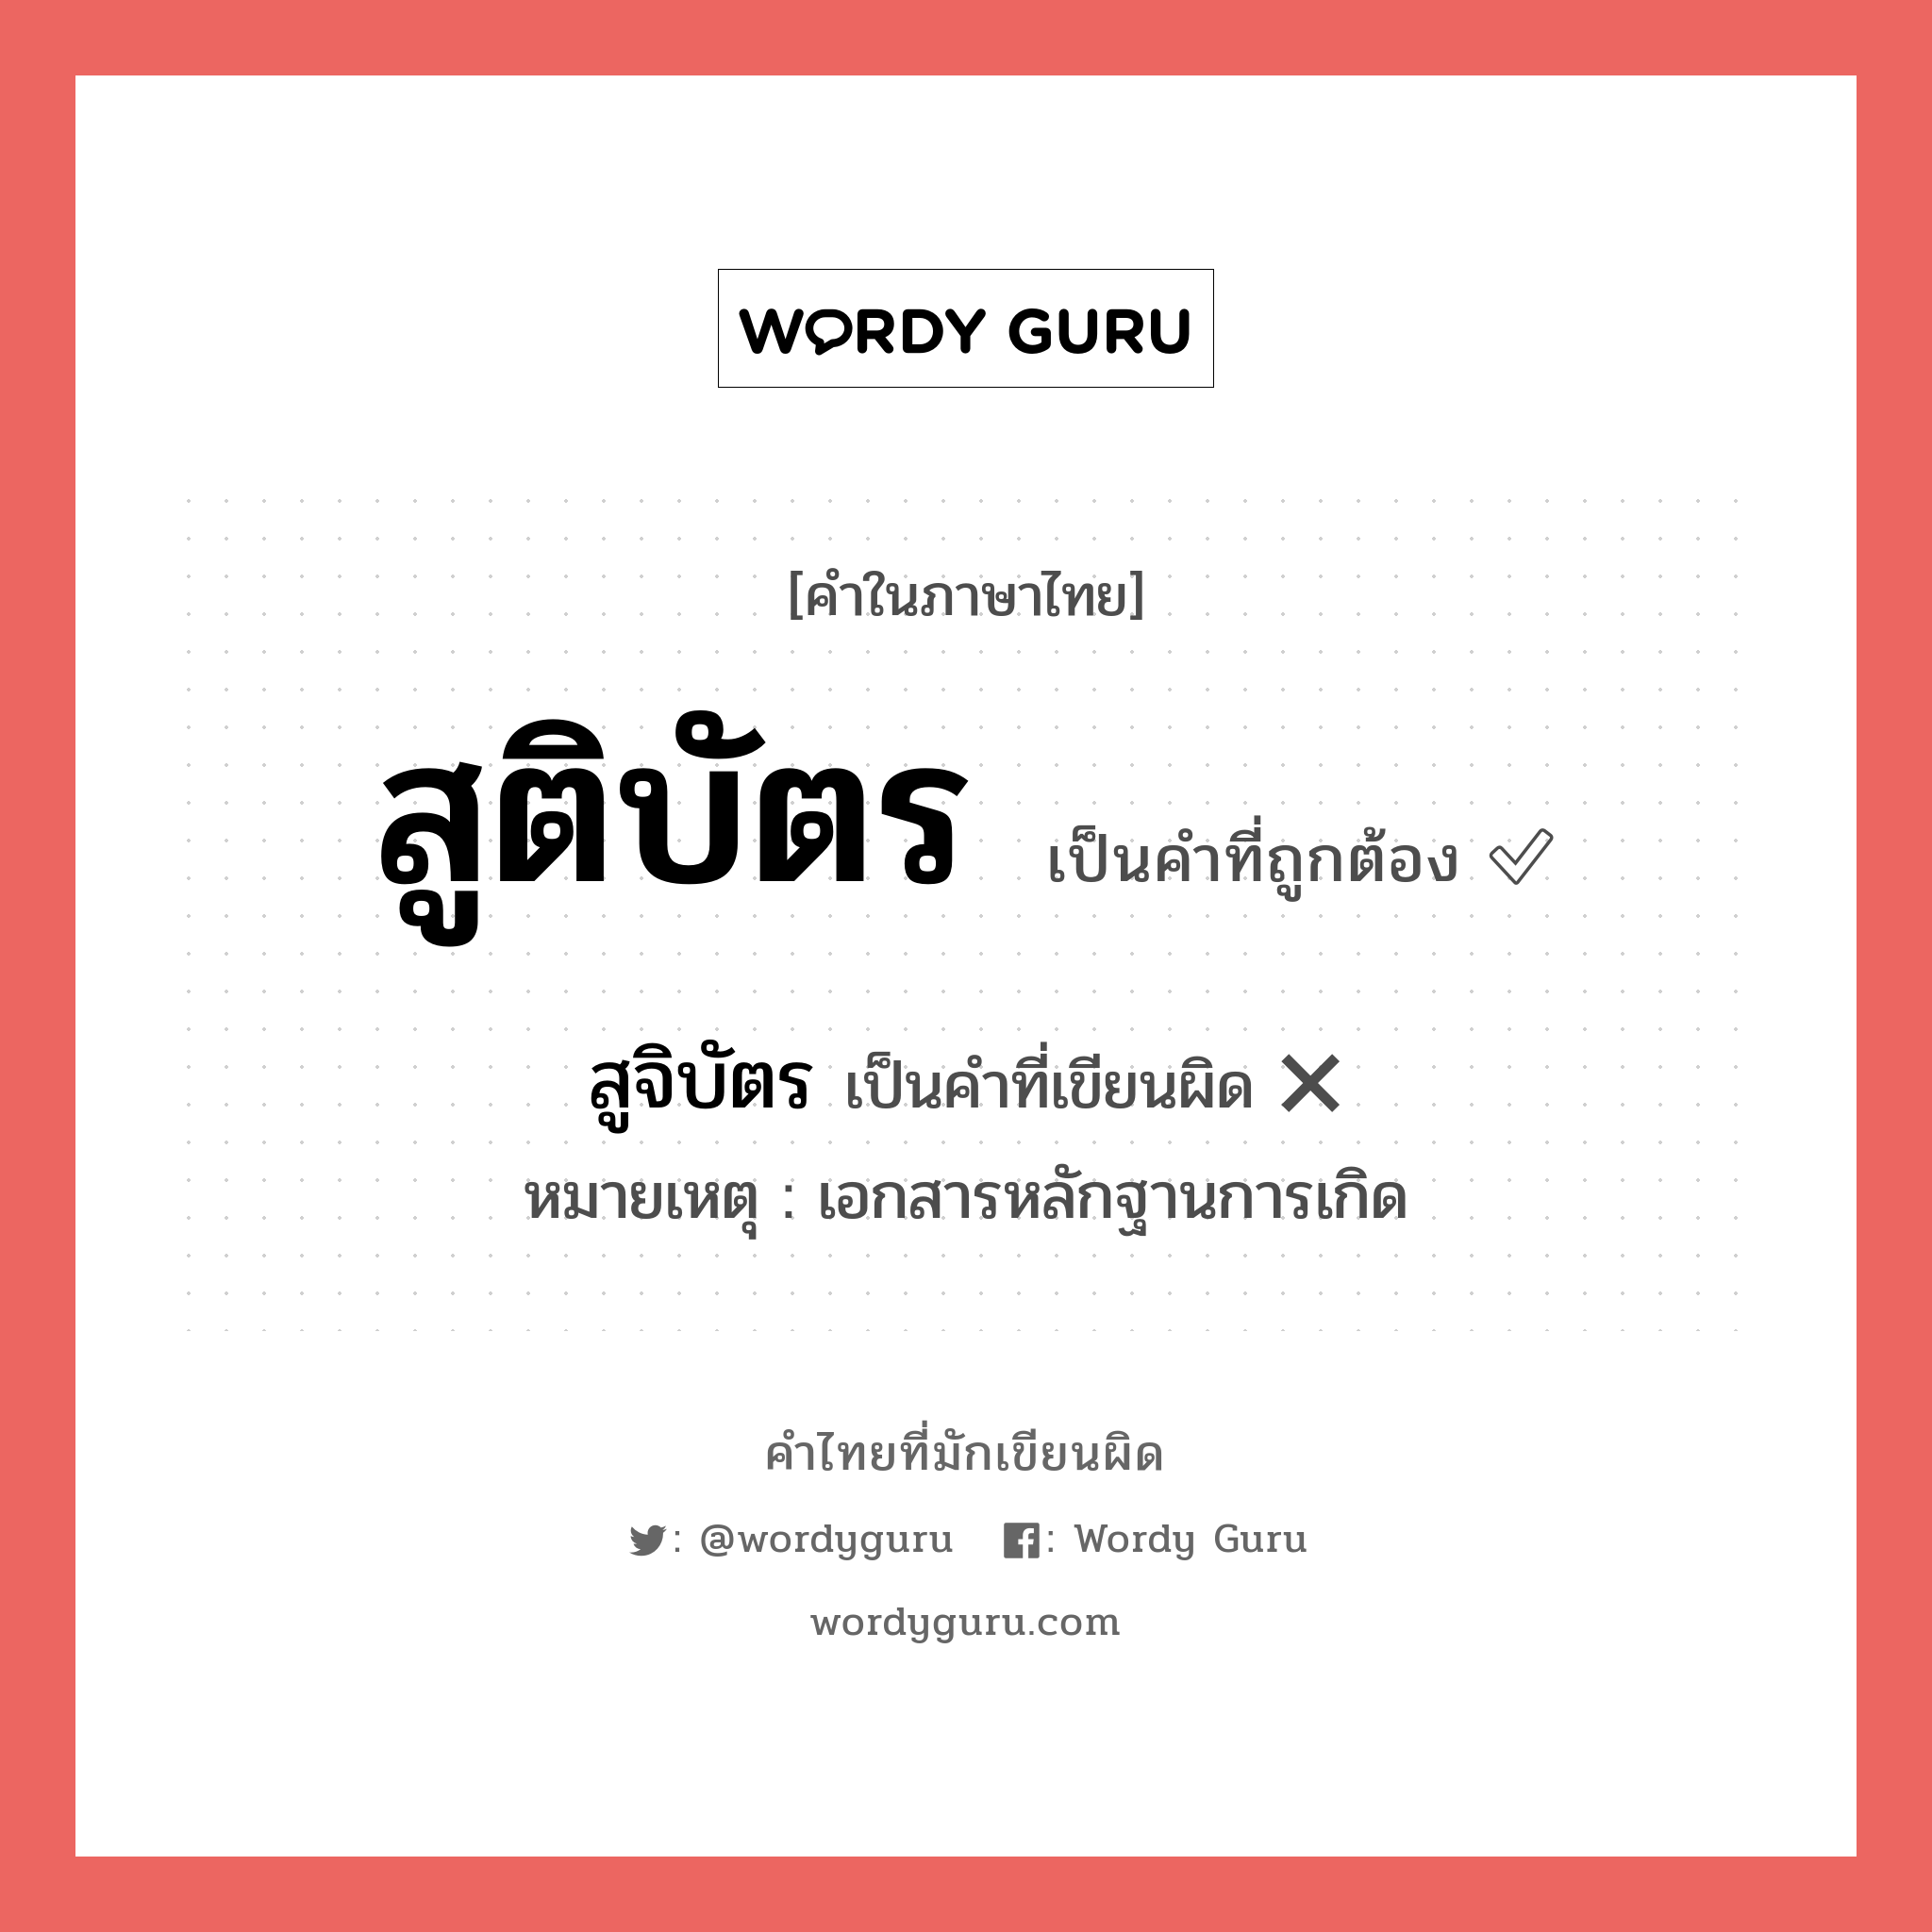 สูจิบัตร หรือ สูติบัตร คำไหนเขียนถูก?, คำในภาษาไทยที่มักเขียนผิด สูติบัตร คำที่ผิด ❌ สูจิบัตร หมายเหตุ เอกสารหลักฐานการเกิด